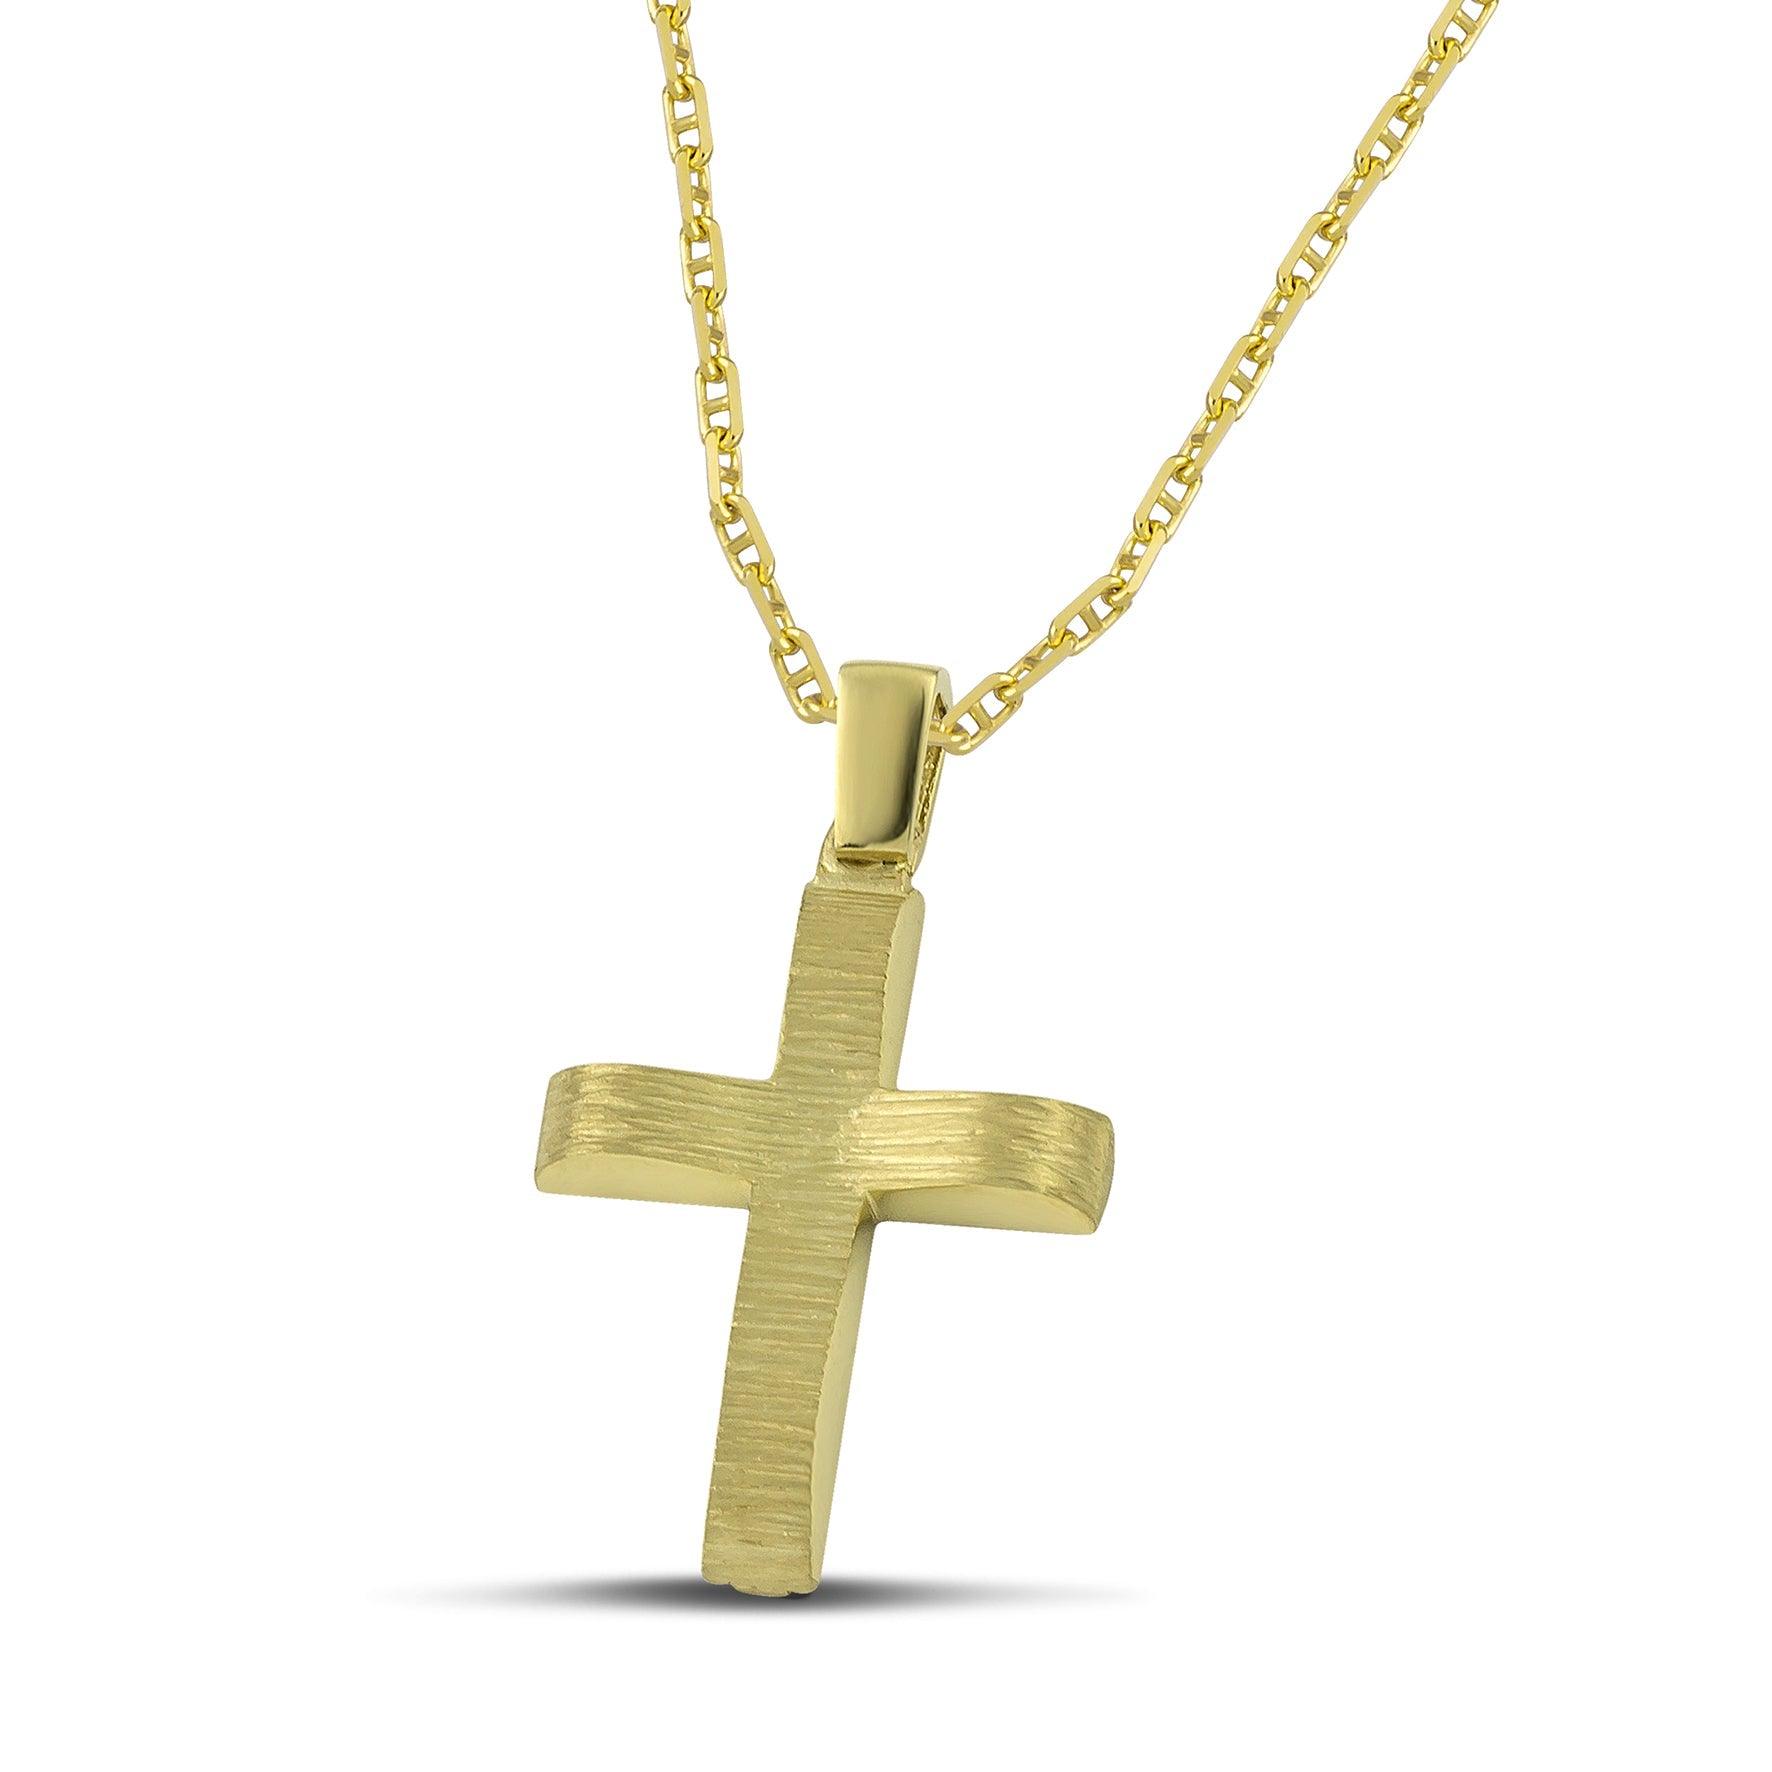 Μοντέρνος βαπτιστικός σταυρός χρυσός Κ14 για αγόρι, διπλής όψης, σαγρέ, σε «Θ»  αλυσίδα. 